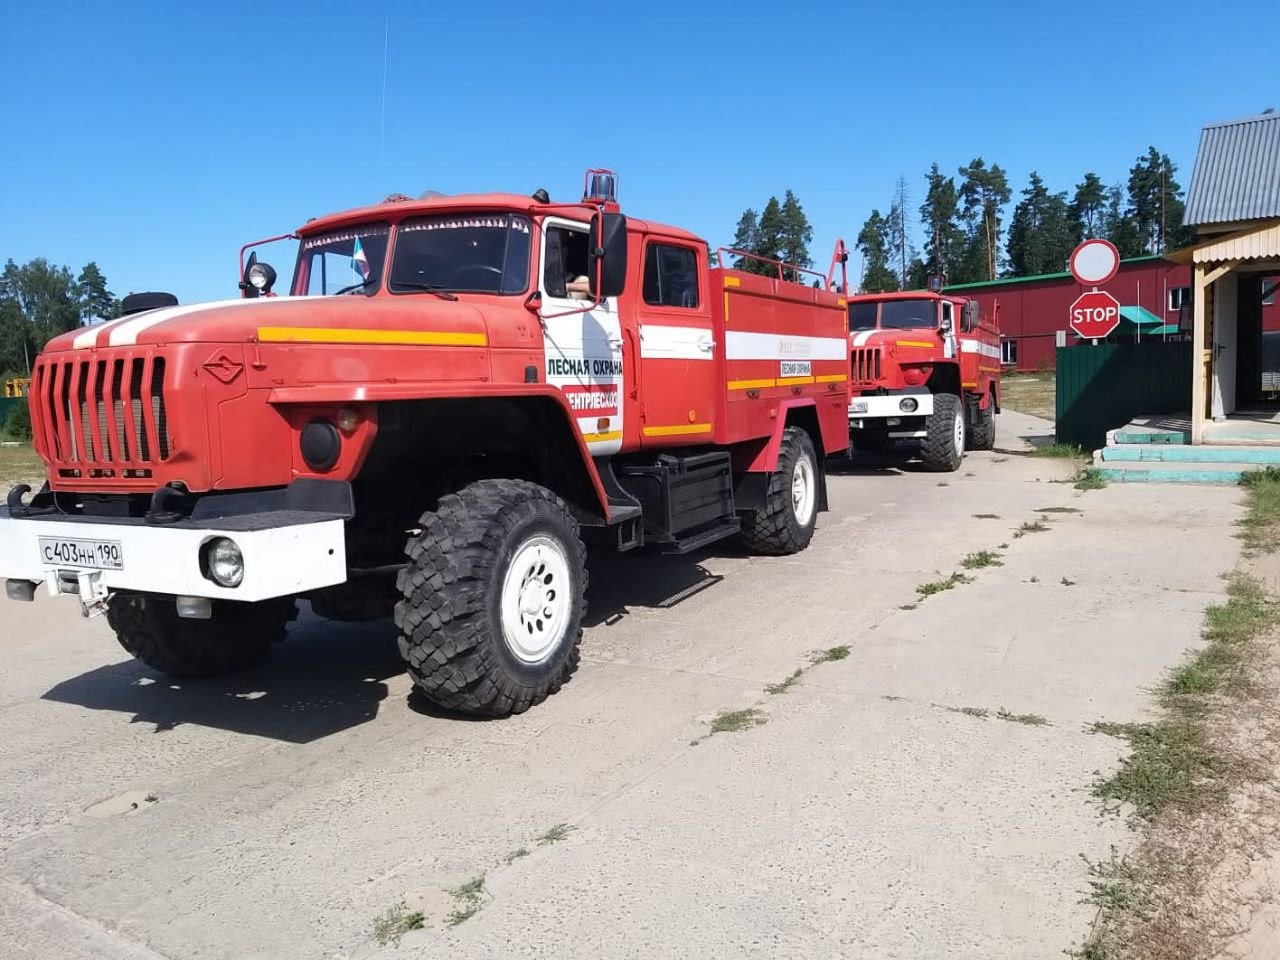 На закупку техники для лесопожарных формирований Подмосковья выделено около 270 млн рублей